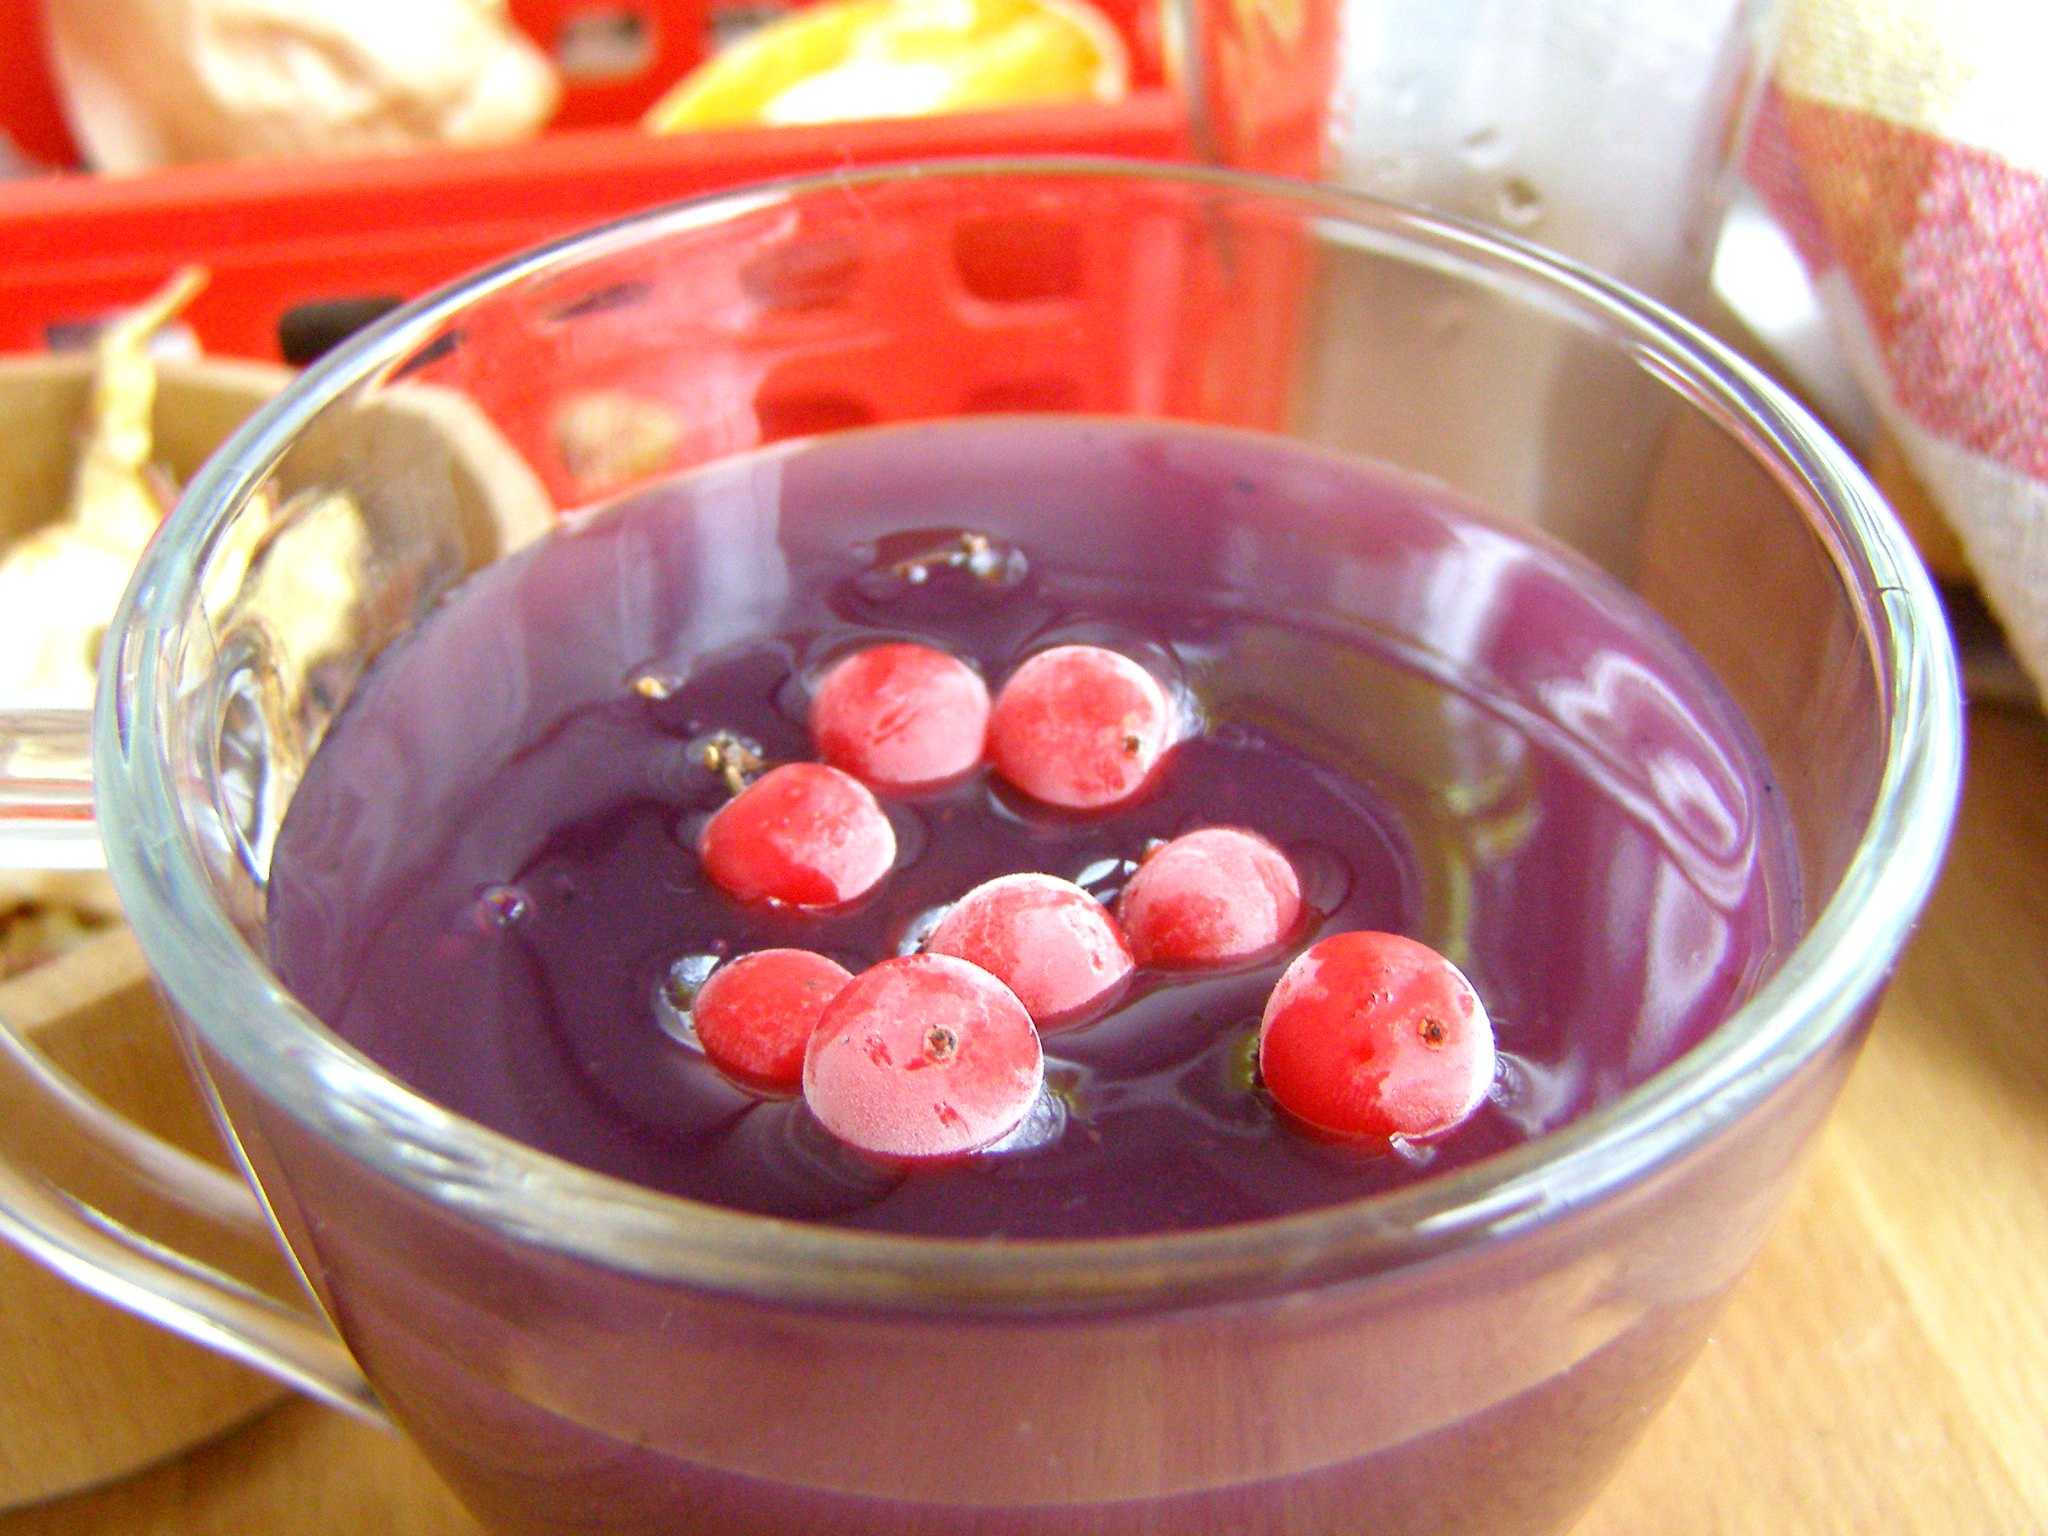 Кисель. рецепт из крахмала и замороженных ягод для детей, густой, жидкий